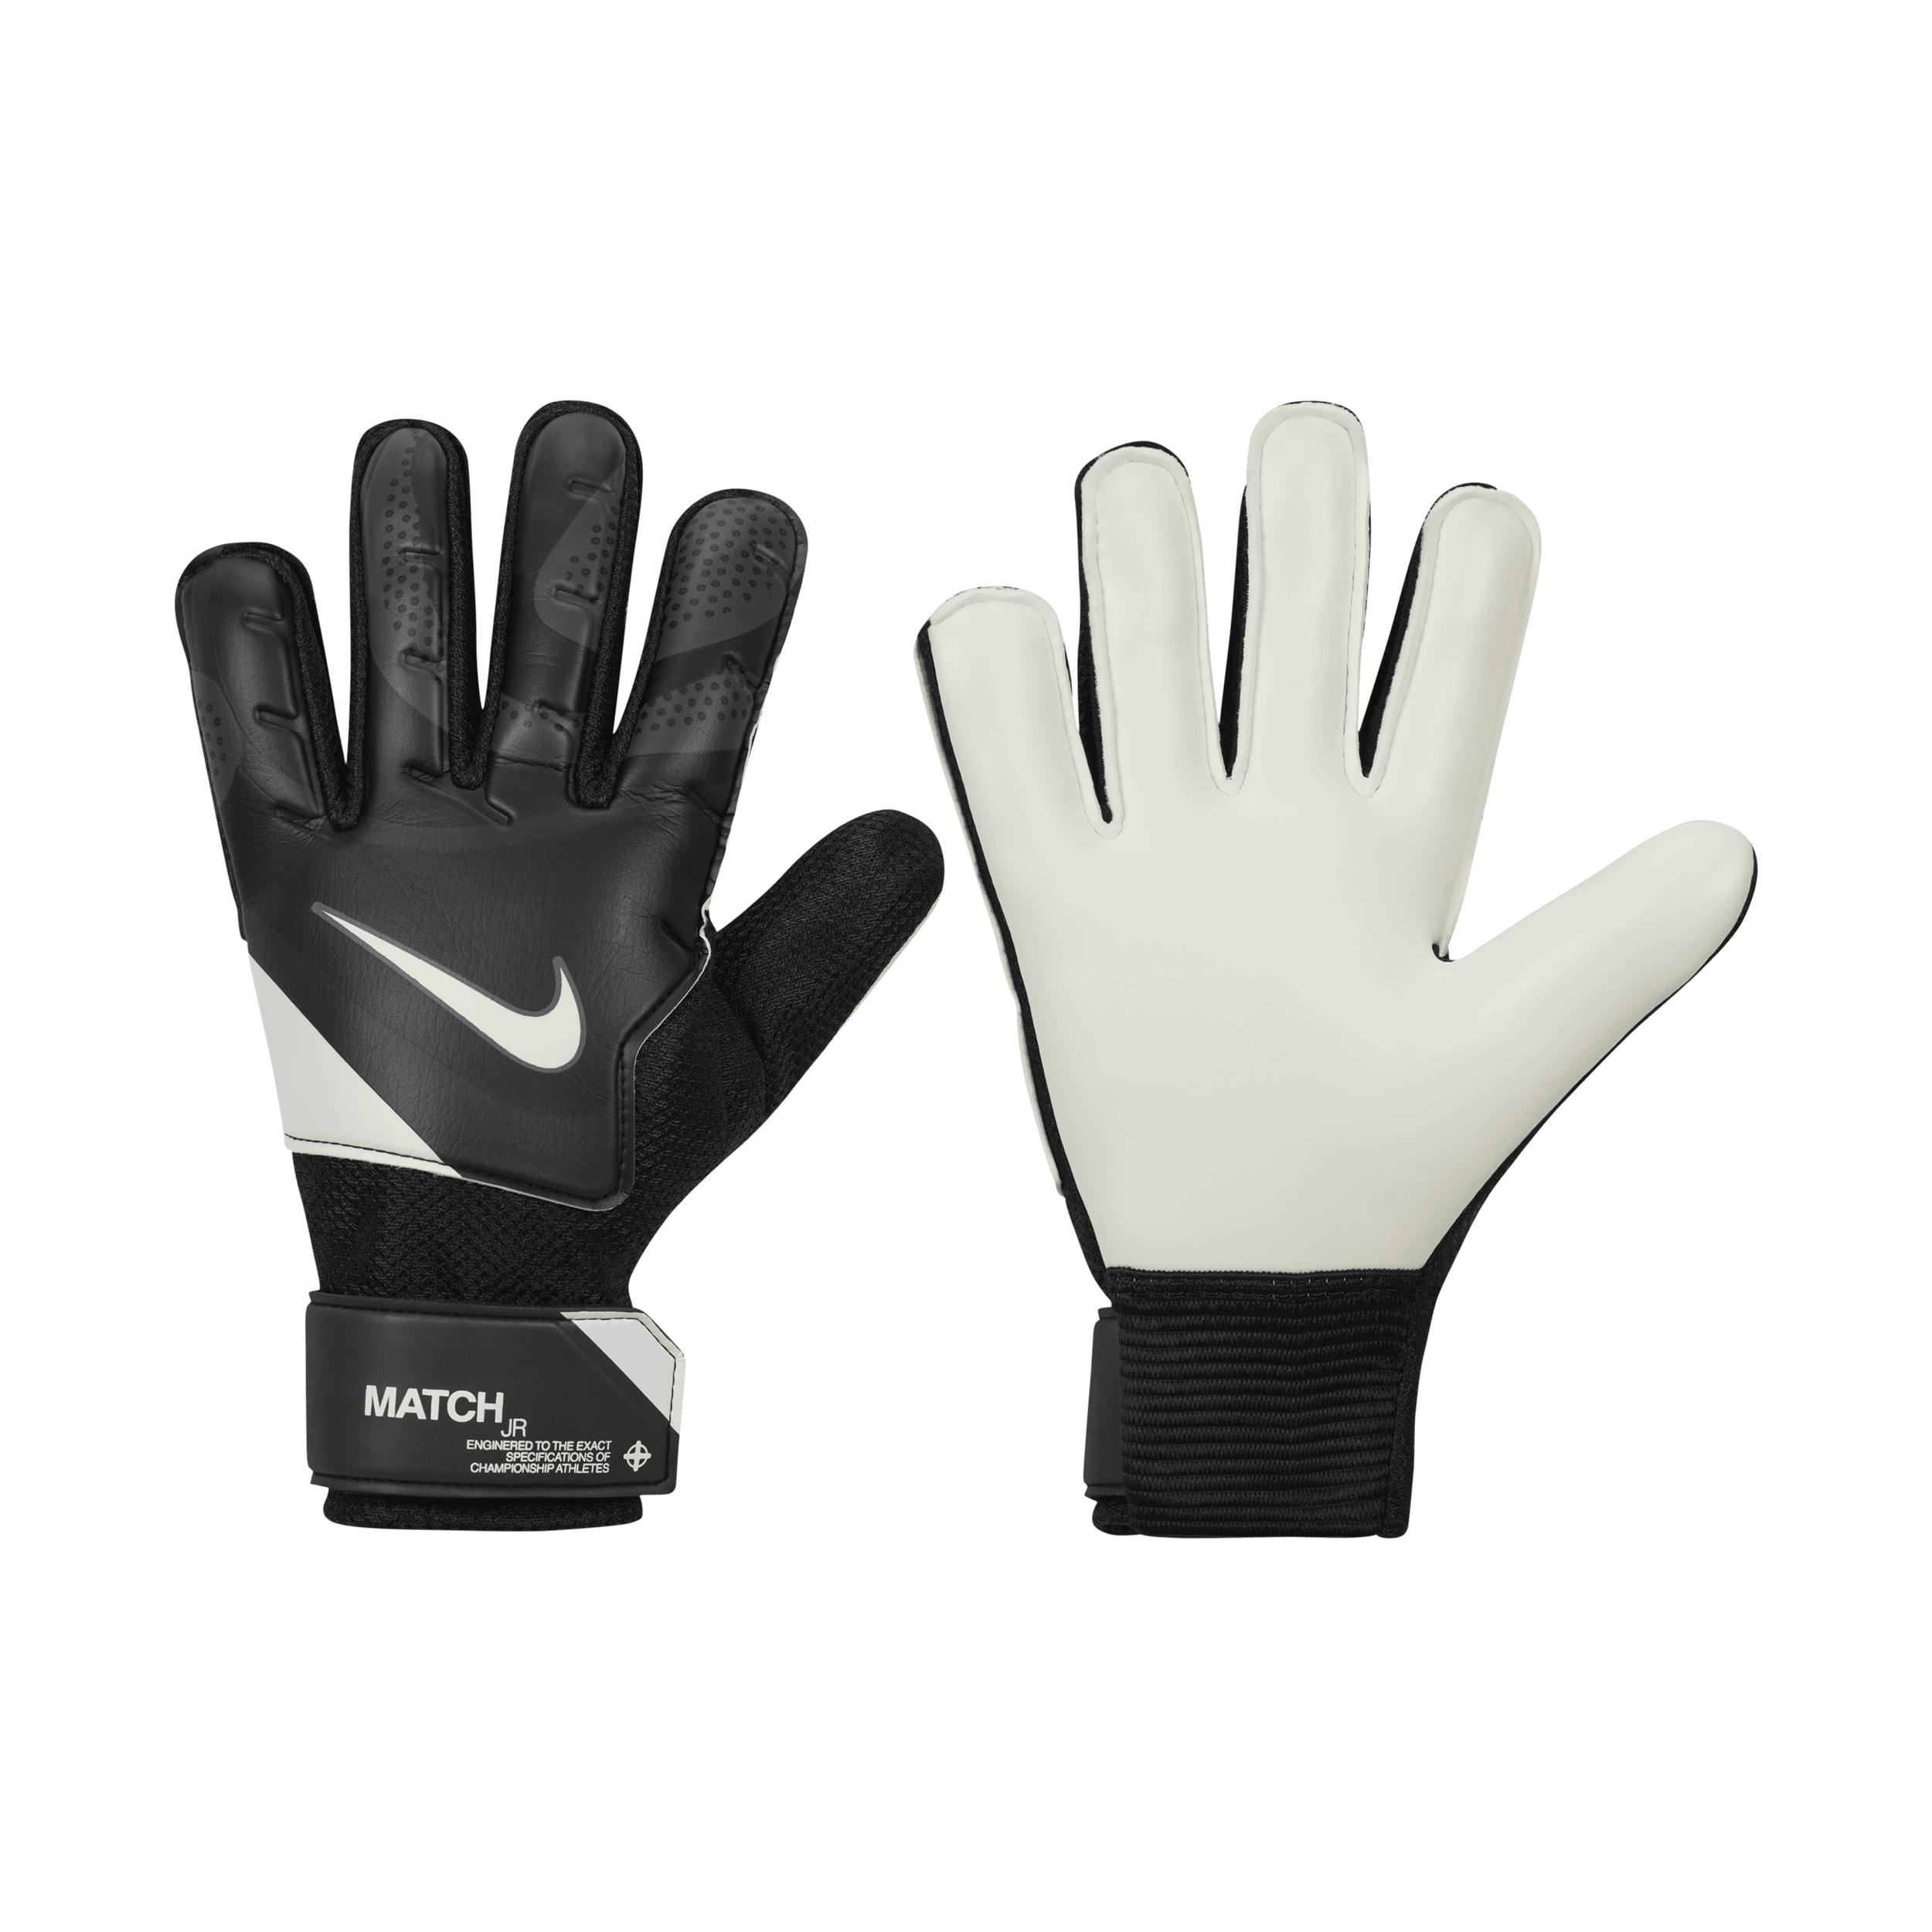 Nike Match Jr. keeperhandschoenen - Zwart